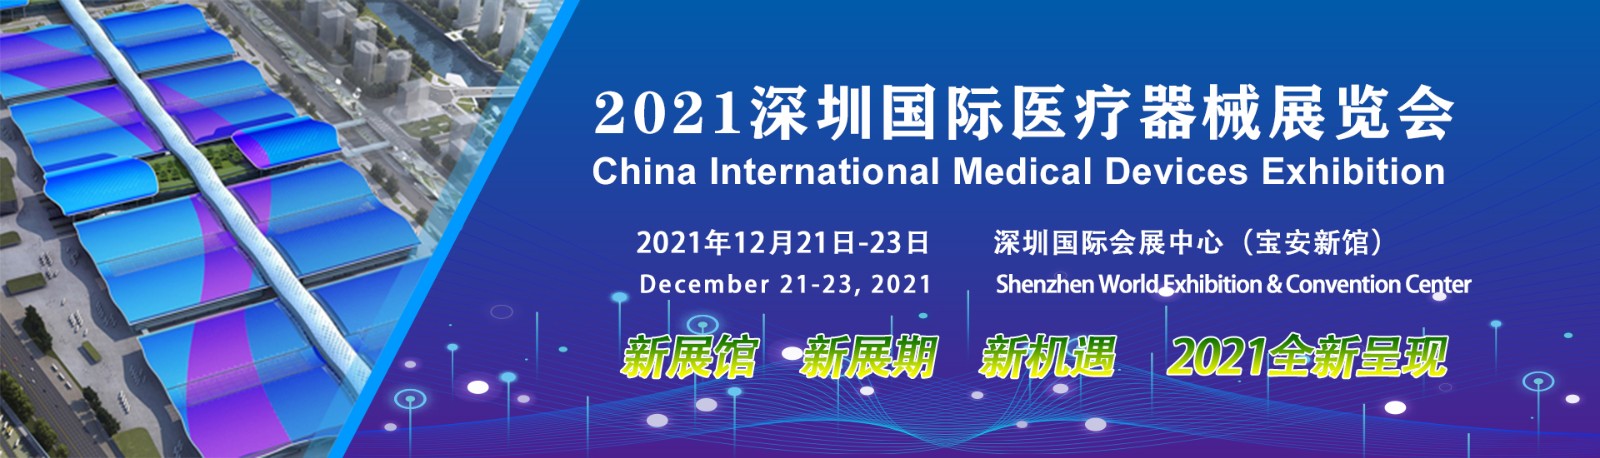 深圳国际医疗器械展览会：各地区展商申请分配展位并确认展区